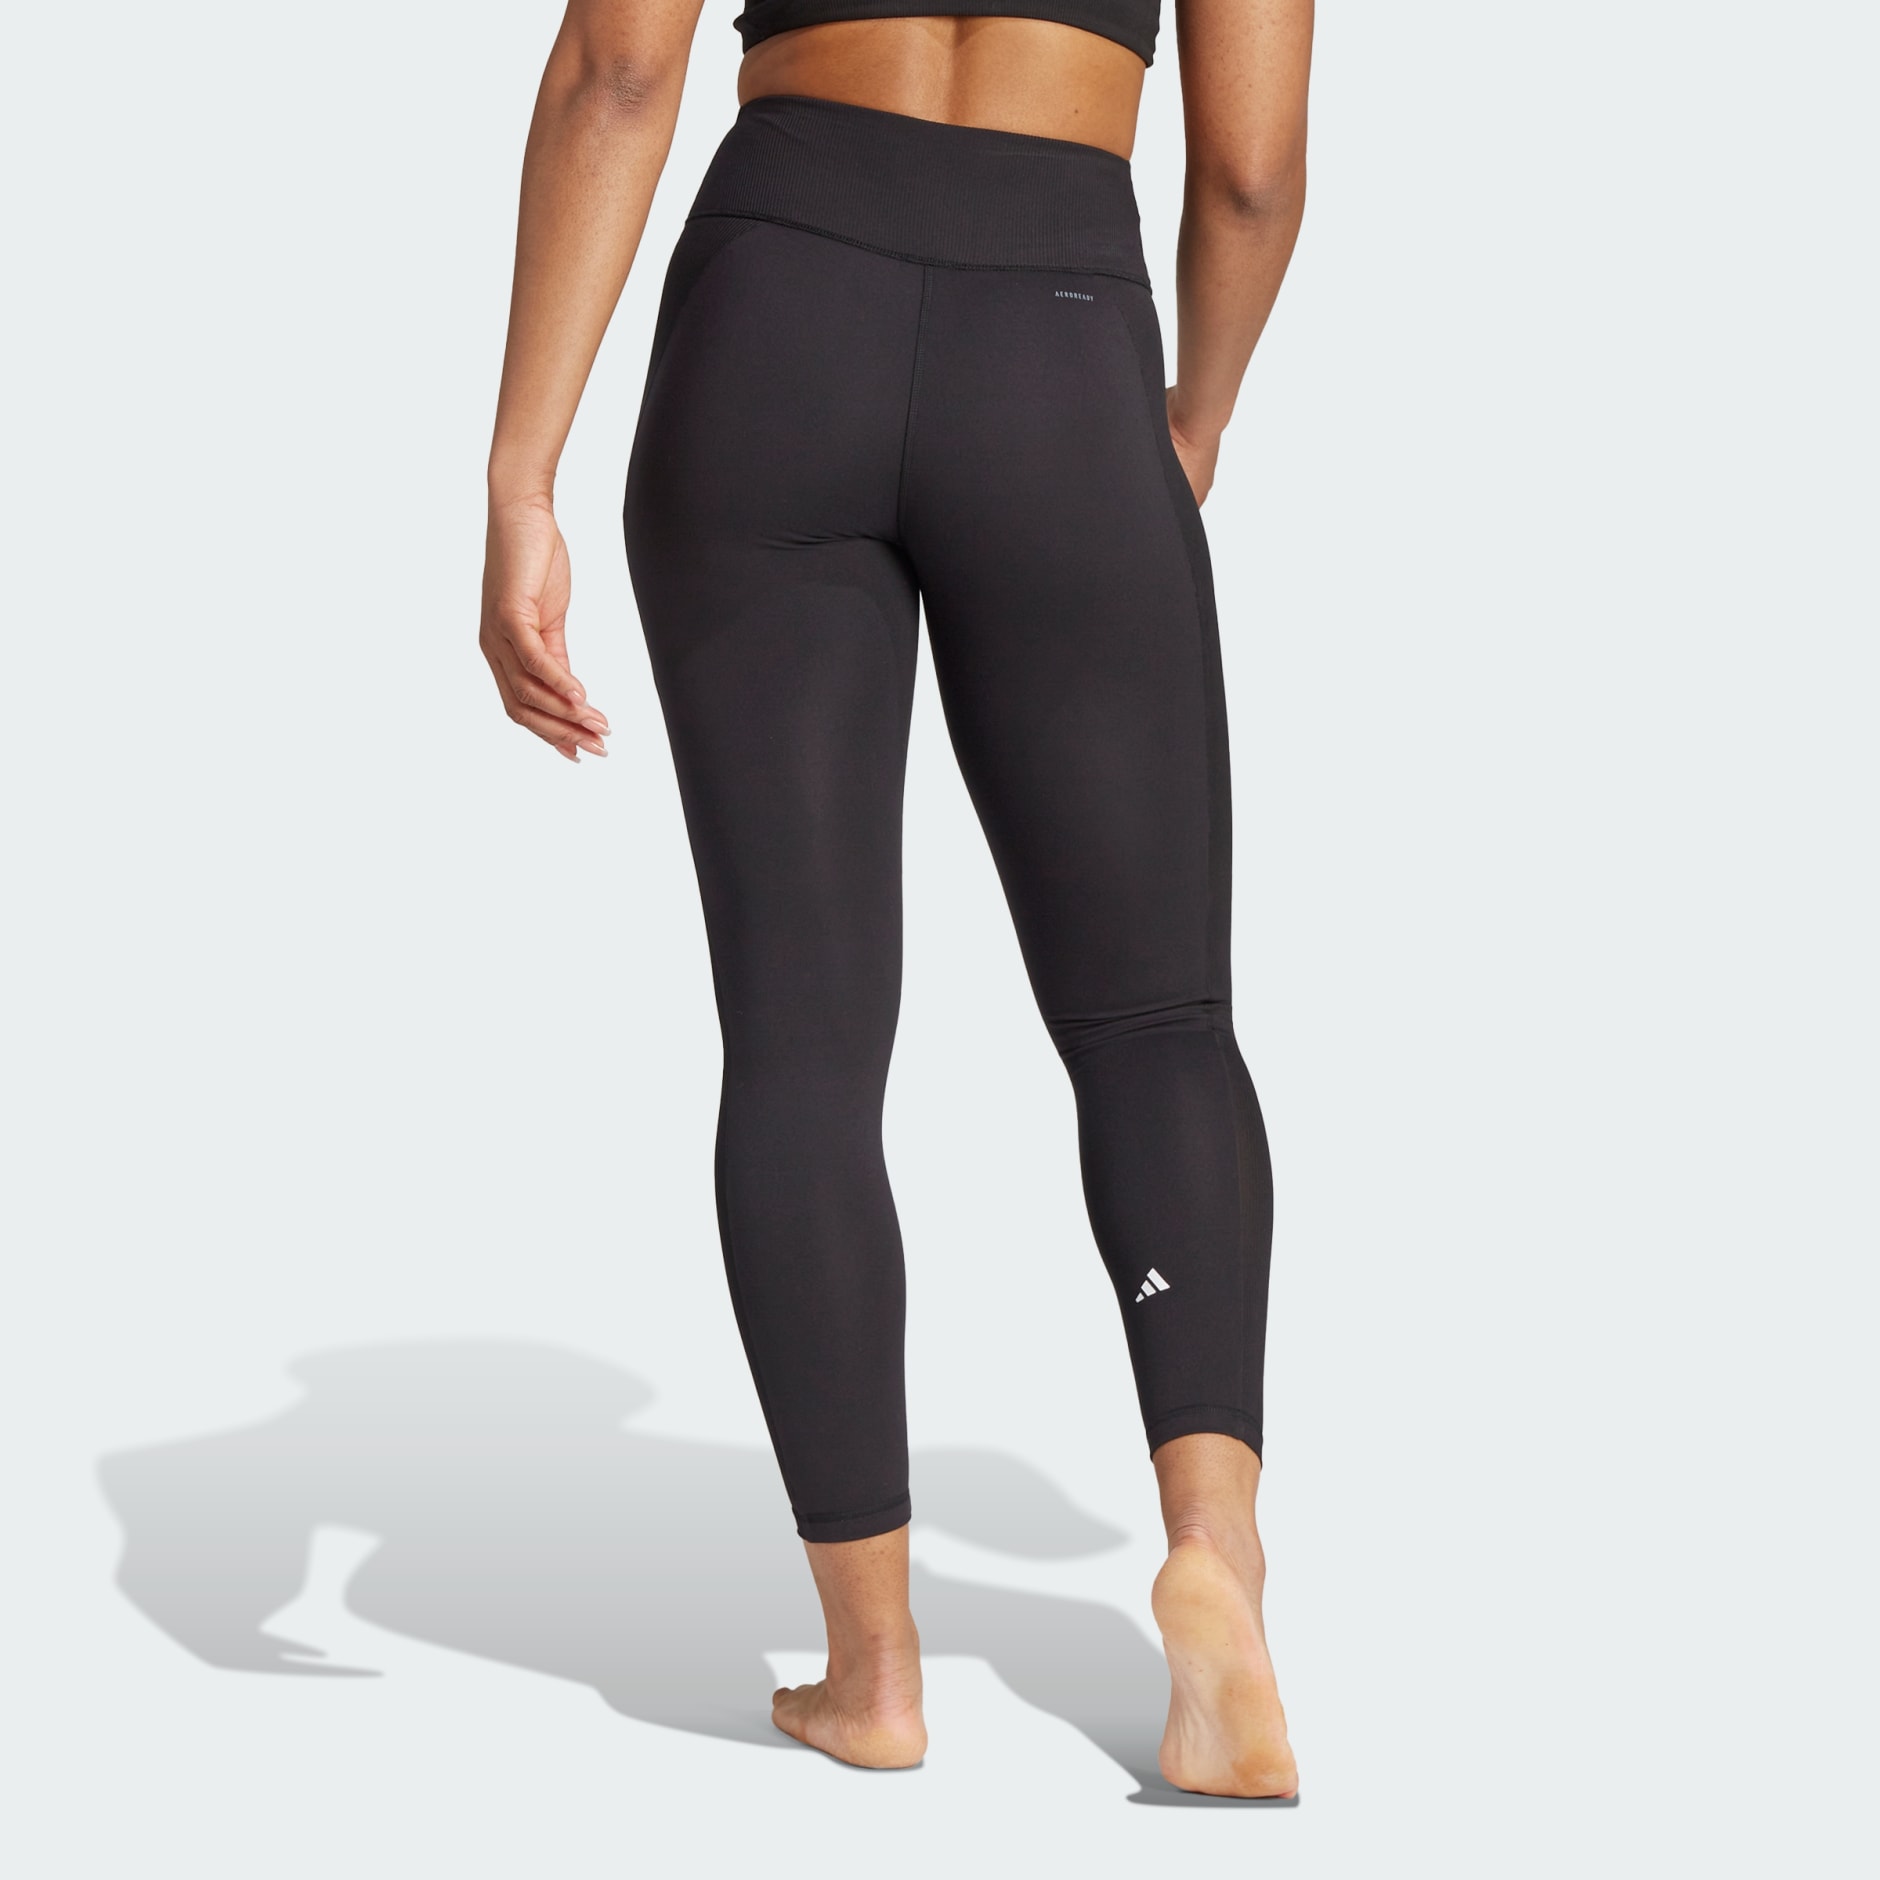 Women's Clothing - Yoga Essentials 7/8 Leggings - Black